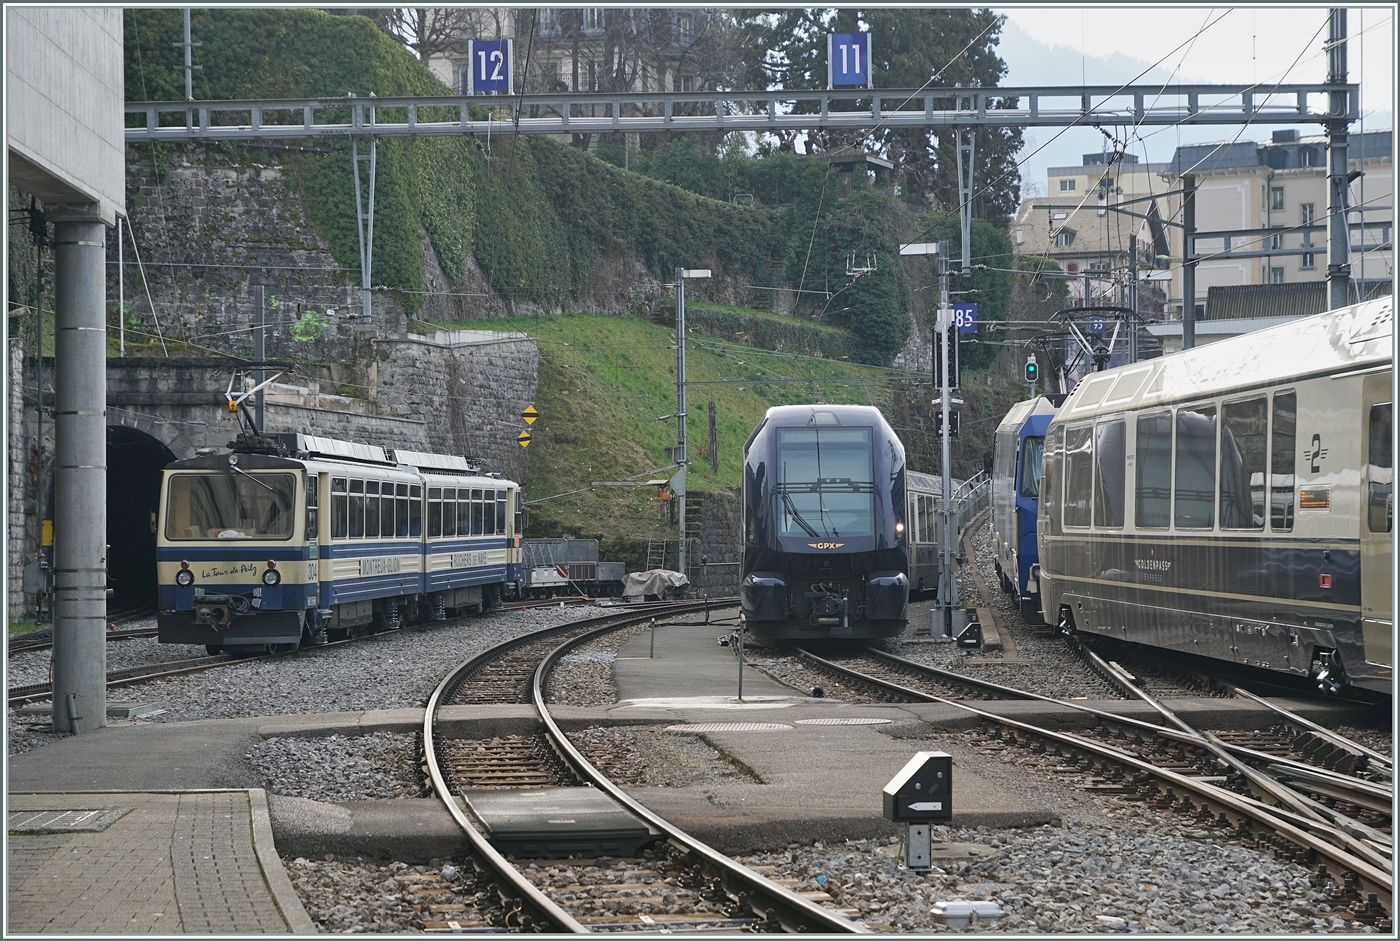 Während der MOB GoldenPass Express Montreux verlässt, steht eine weitere GPX Komposition abgestellt im Bahnhof und ganz links im Bild ist der Rochers de Naye Bhe 4/8 304  La Tour de Peilz  zu sehen. 

17. Feb. 2024